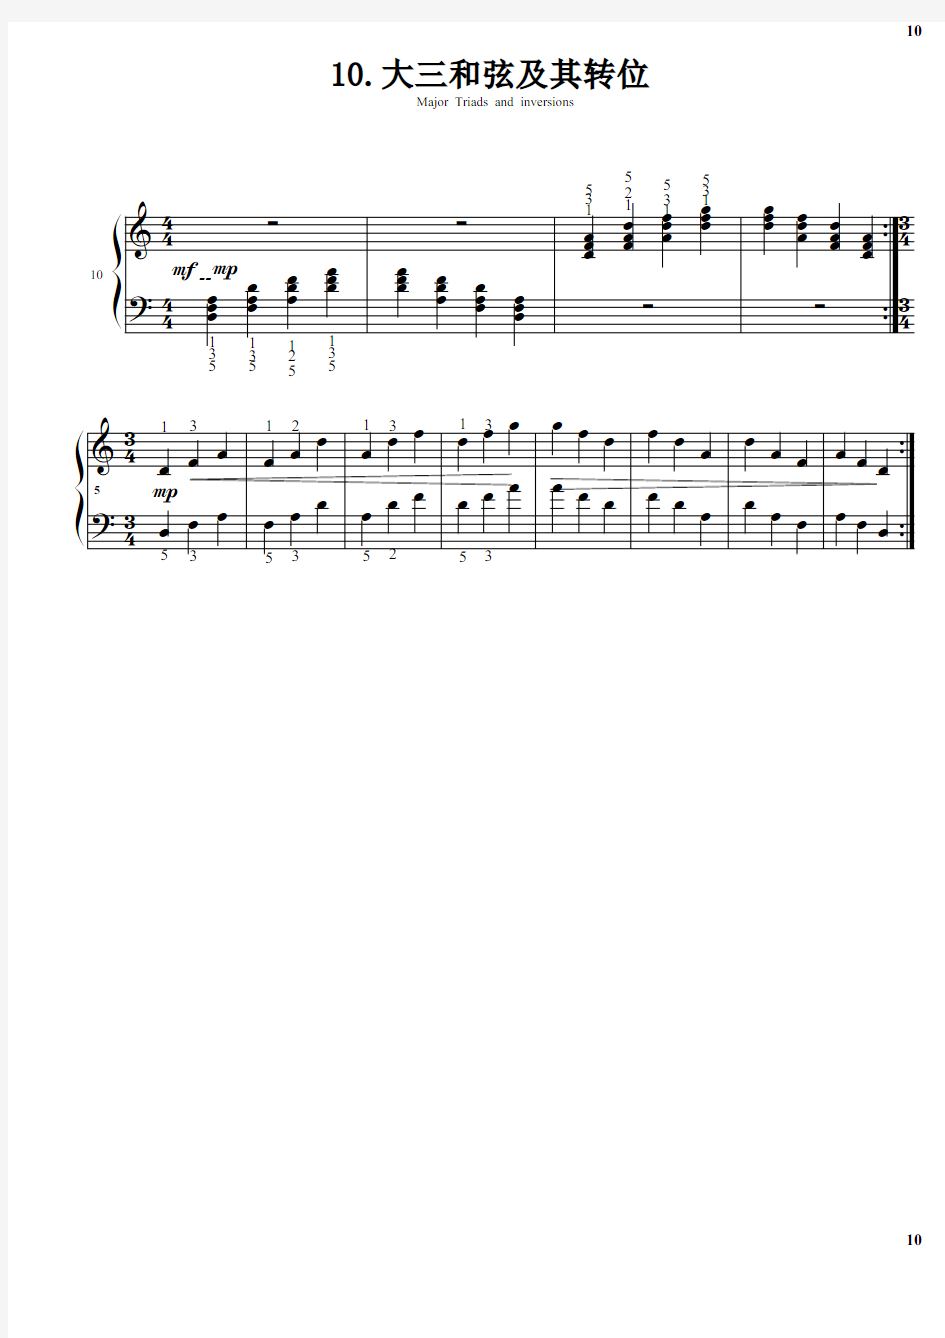 10.大三和弦及其转位 巴斯蒂安钢琴教程(4)技巧部分 原版 正谱 五线谱 钢琴谱